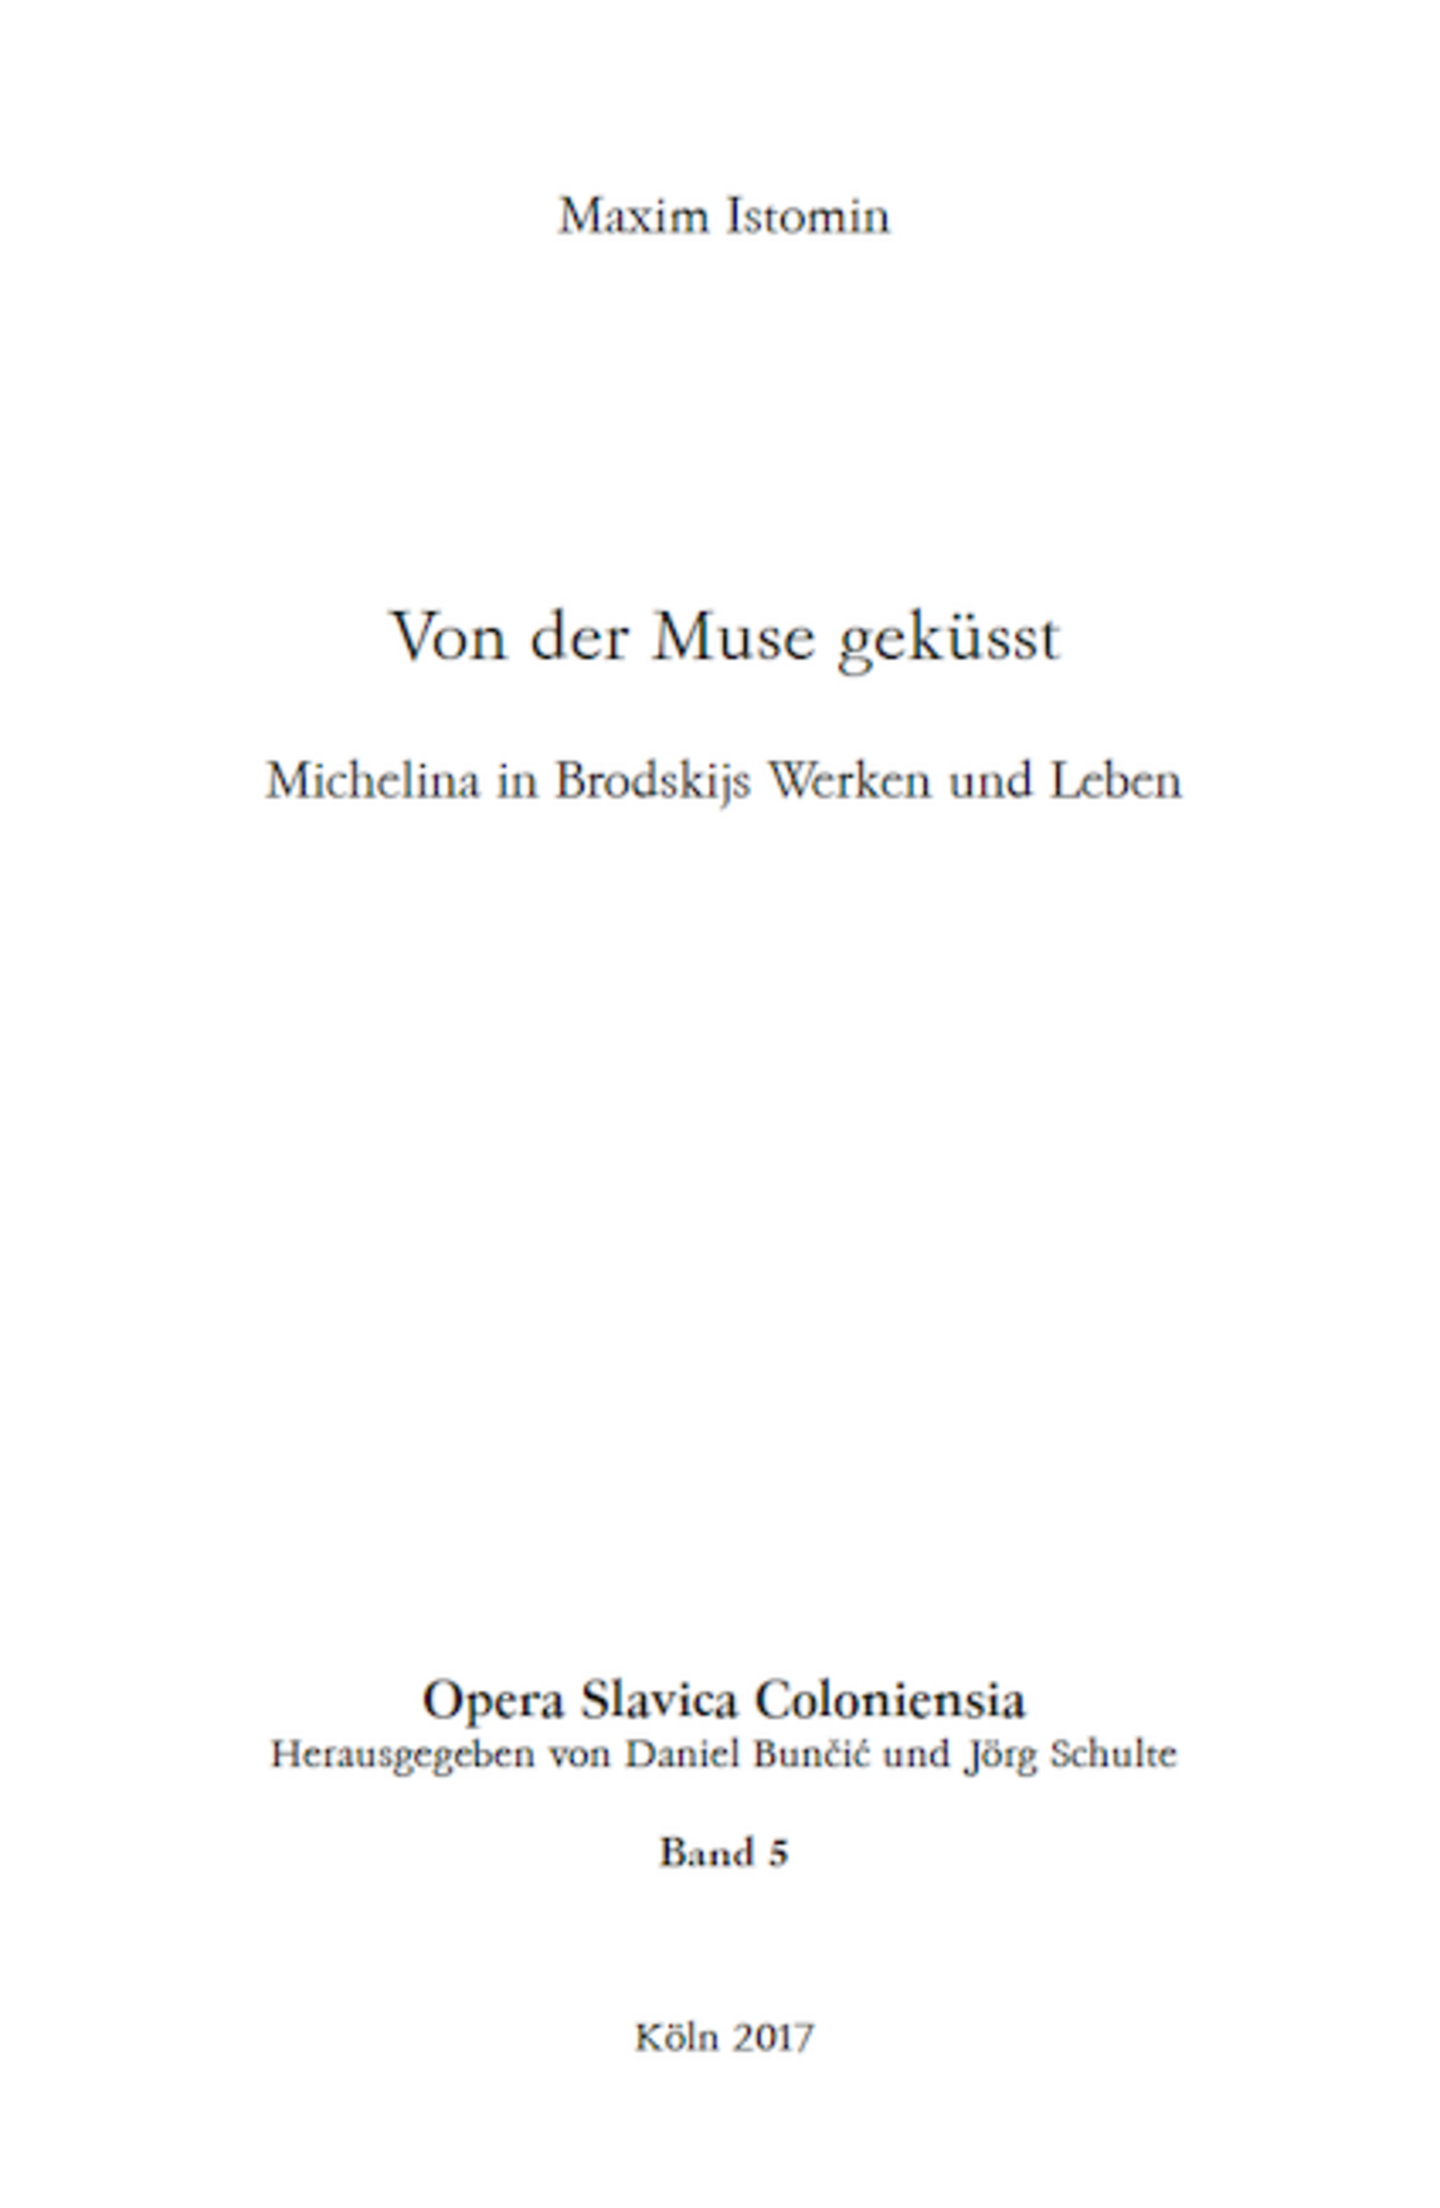 Opera Slavica Coloniensia, Bd. 5: Maxim Istomin (2017) Von der Muse geküsst: Michelina in Brodskijs Werken und Leben